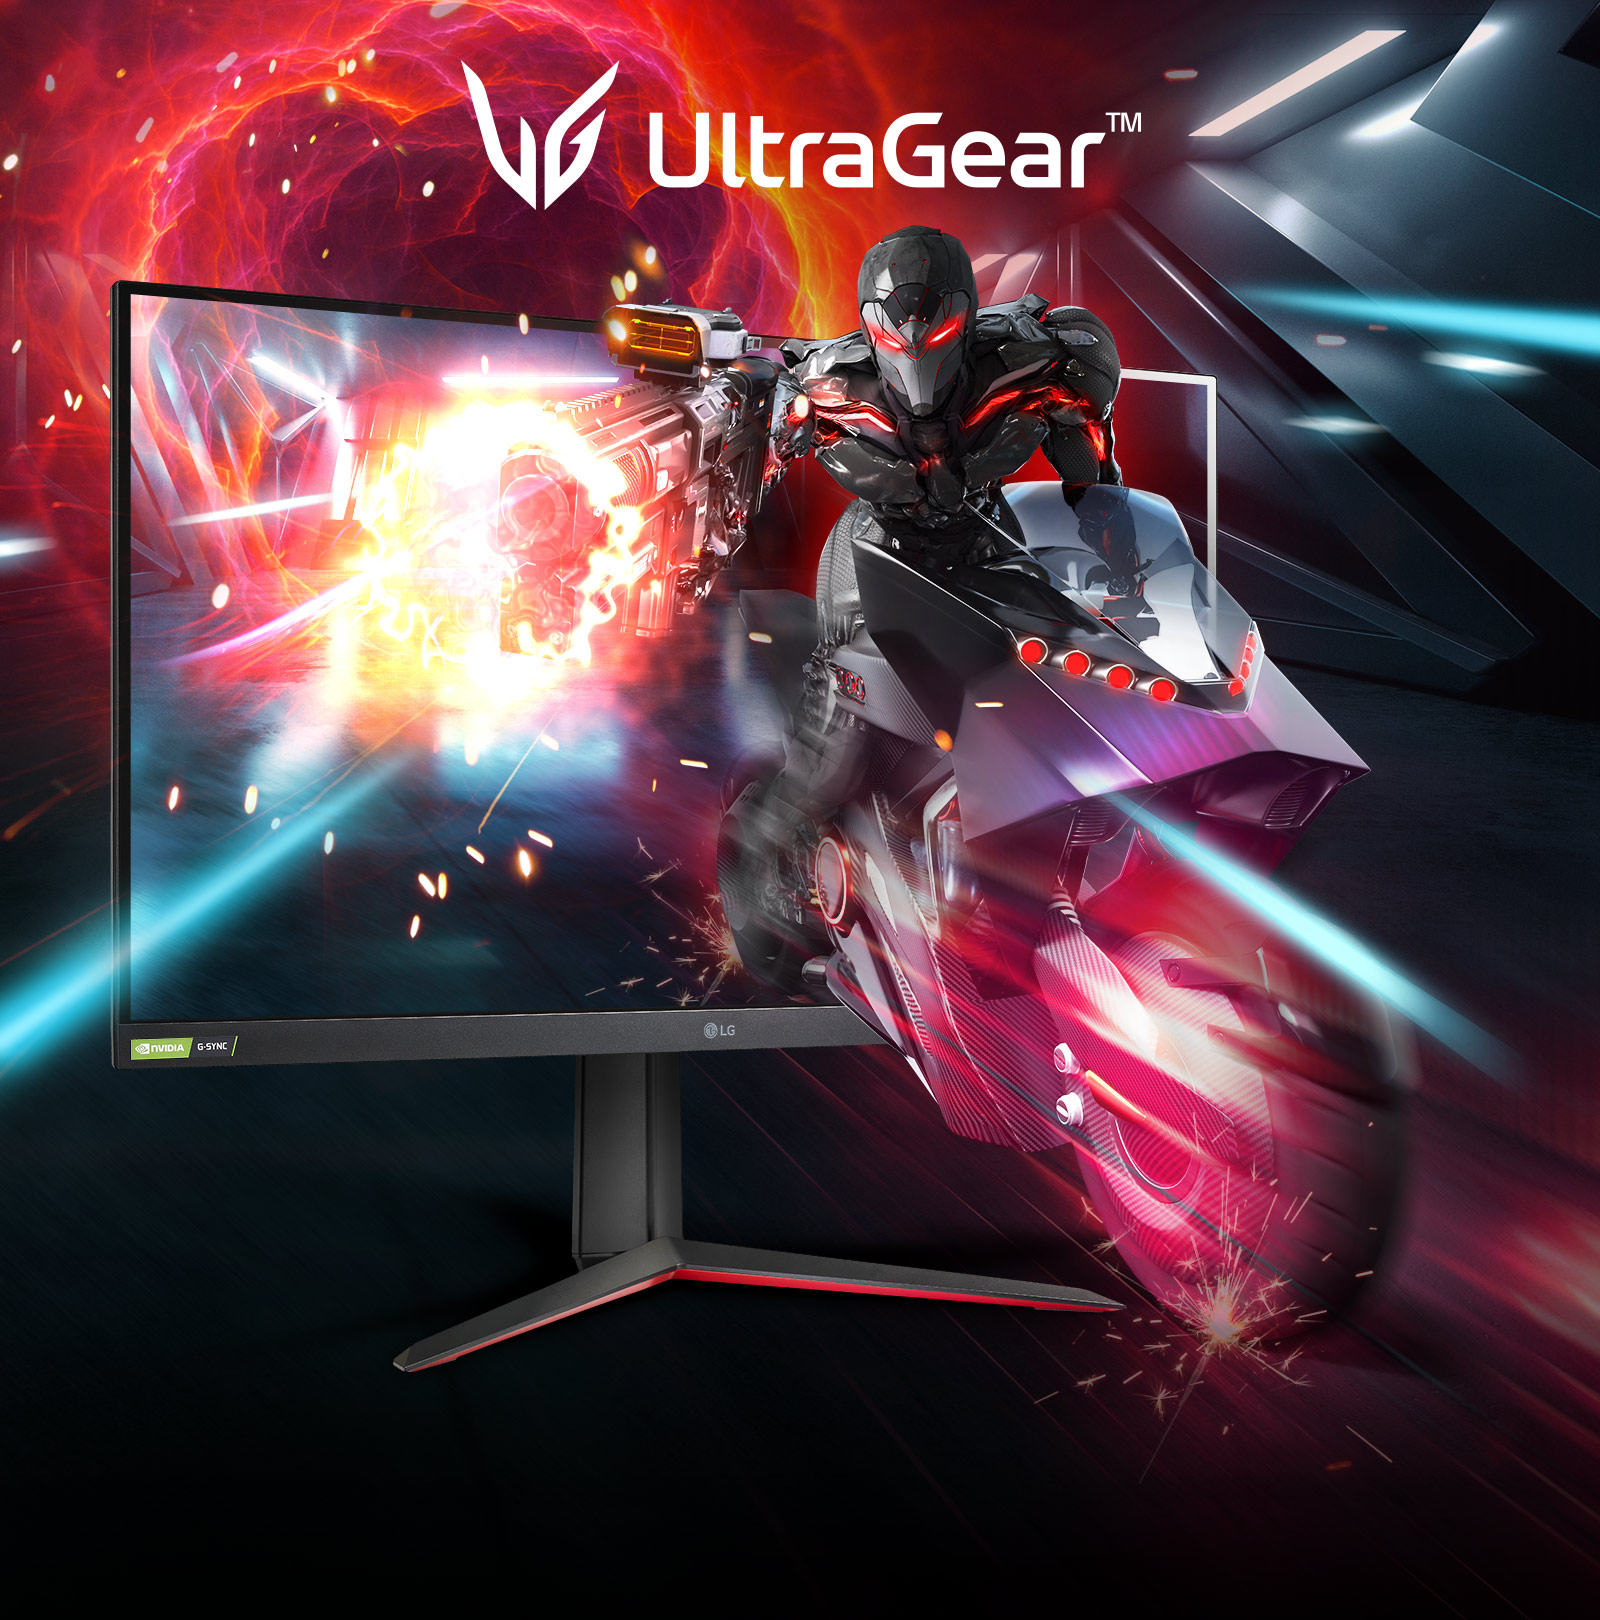 מסך LG UltraGear מסדרת המסכים העוצמתיים ביותר עבור חוויית הגיימינג שלכם